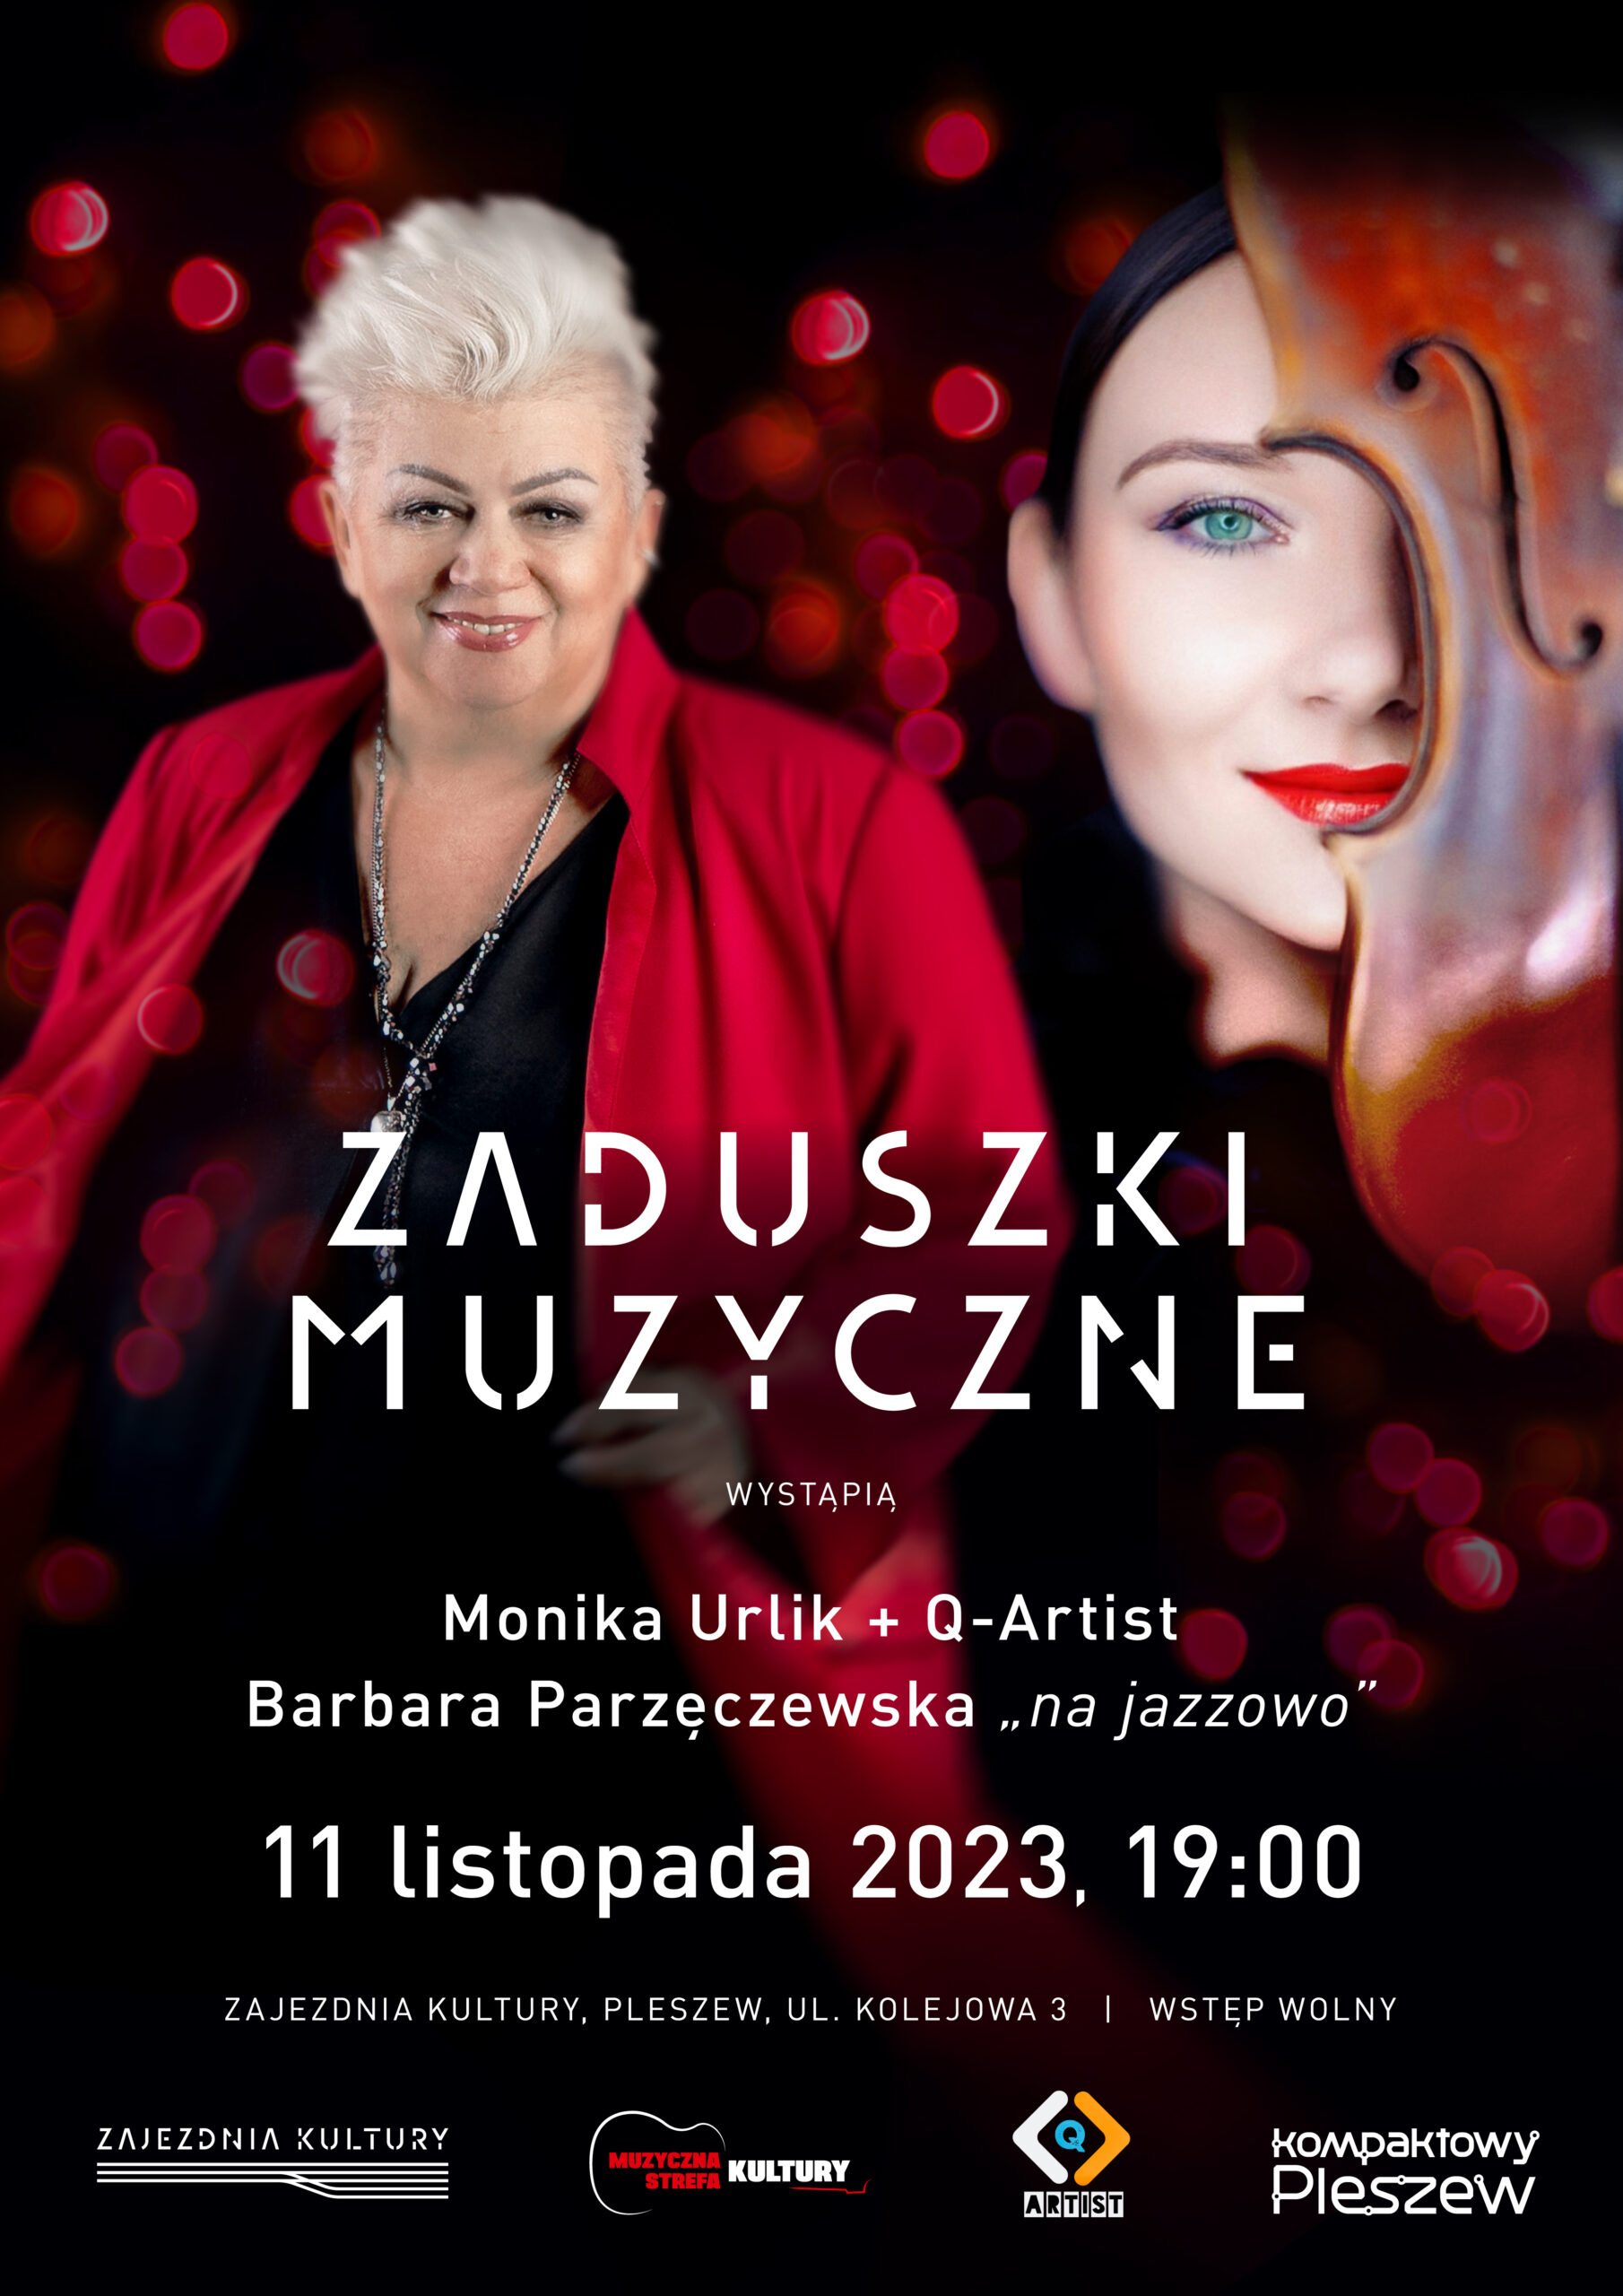 Plakat Muzycznych Zaduszek organizowanych w Zajezdni Kultury w Pleszewie 11 listopada 2023 roku o godzinie 19:00.